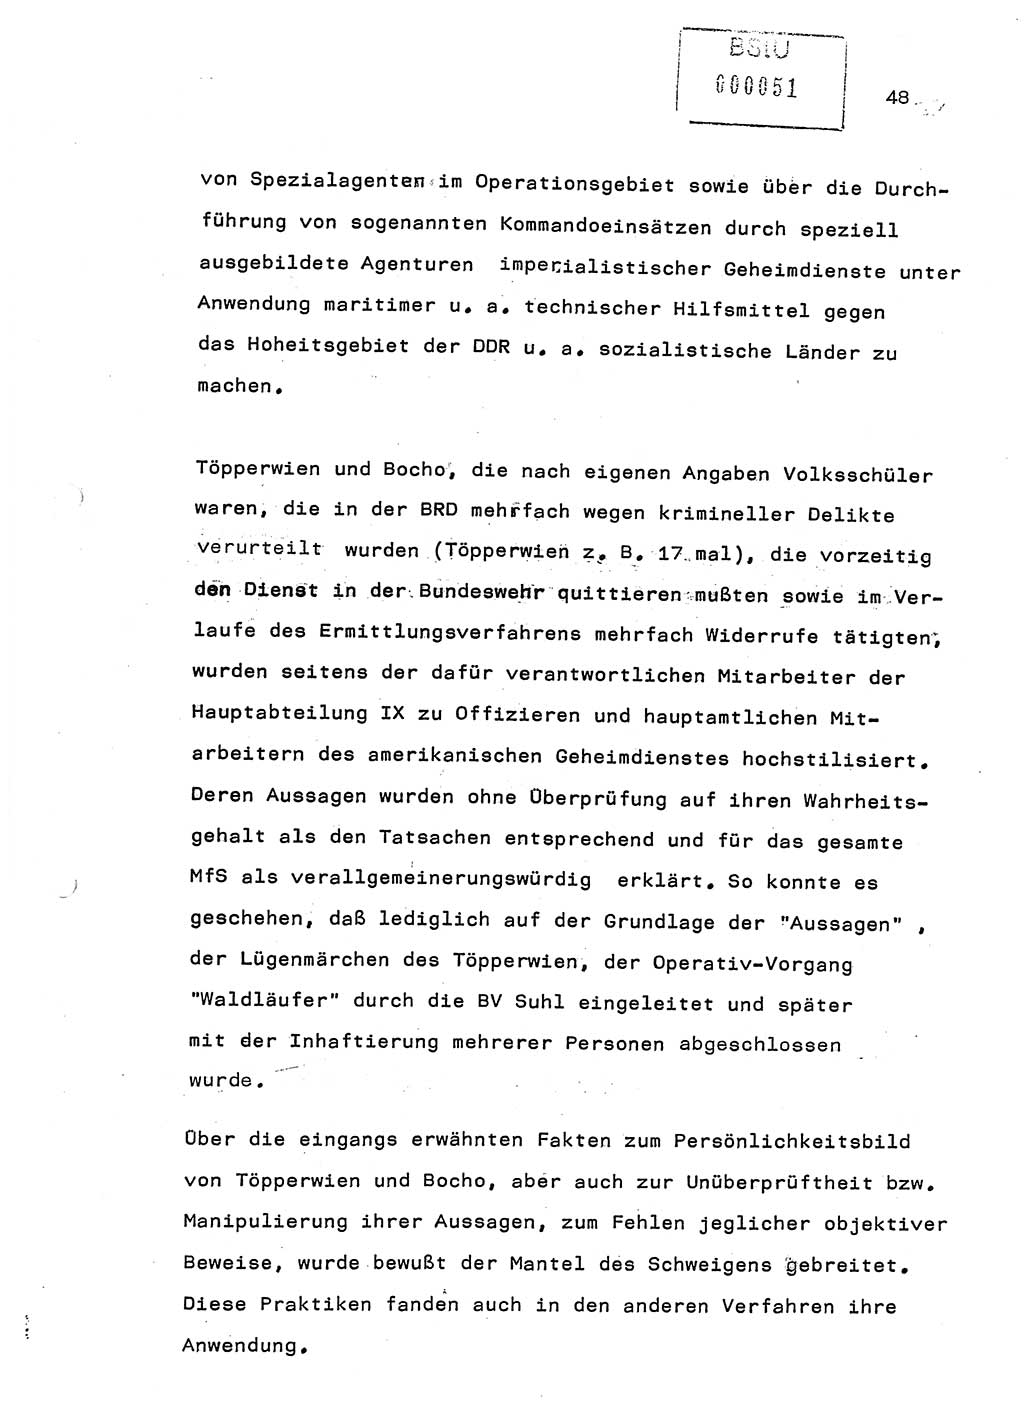 Referat (Generaloberst Erich Mielke) auf der Zentralen Dienstkonferenz am 24.5.1979 [Ministerium für Staatssicherheit (MfS), Deutsche Demokratische Republik (DDR), Der Minister], Berlin 1979, Seite 48 (Ref. DK DDR MfS Min. /79 1979, S. 48)